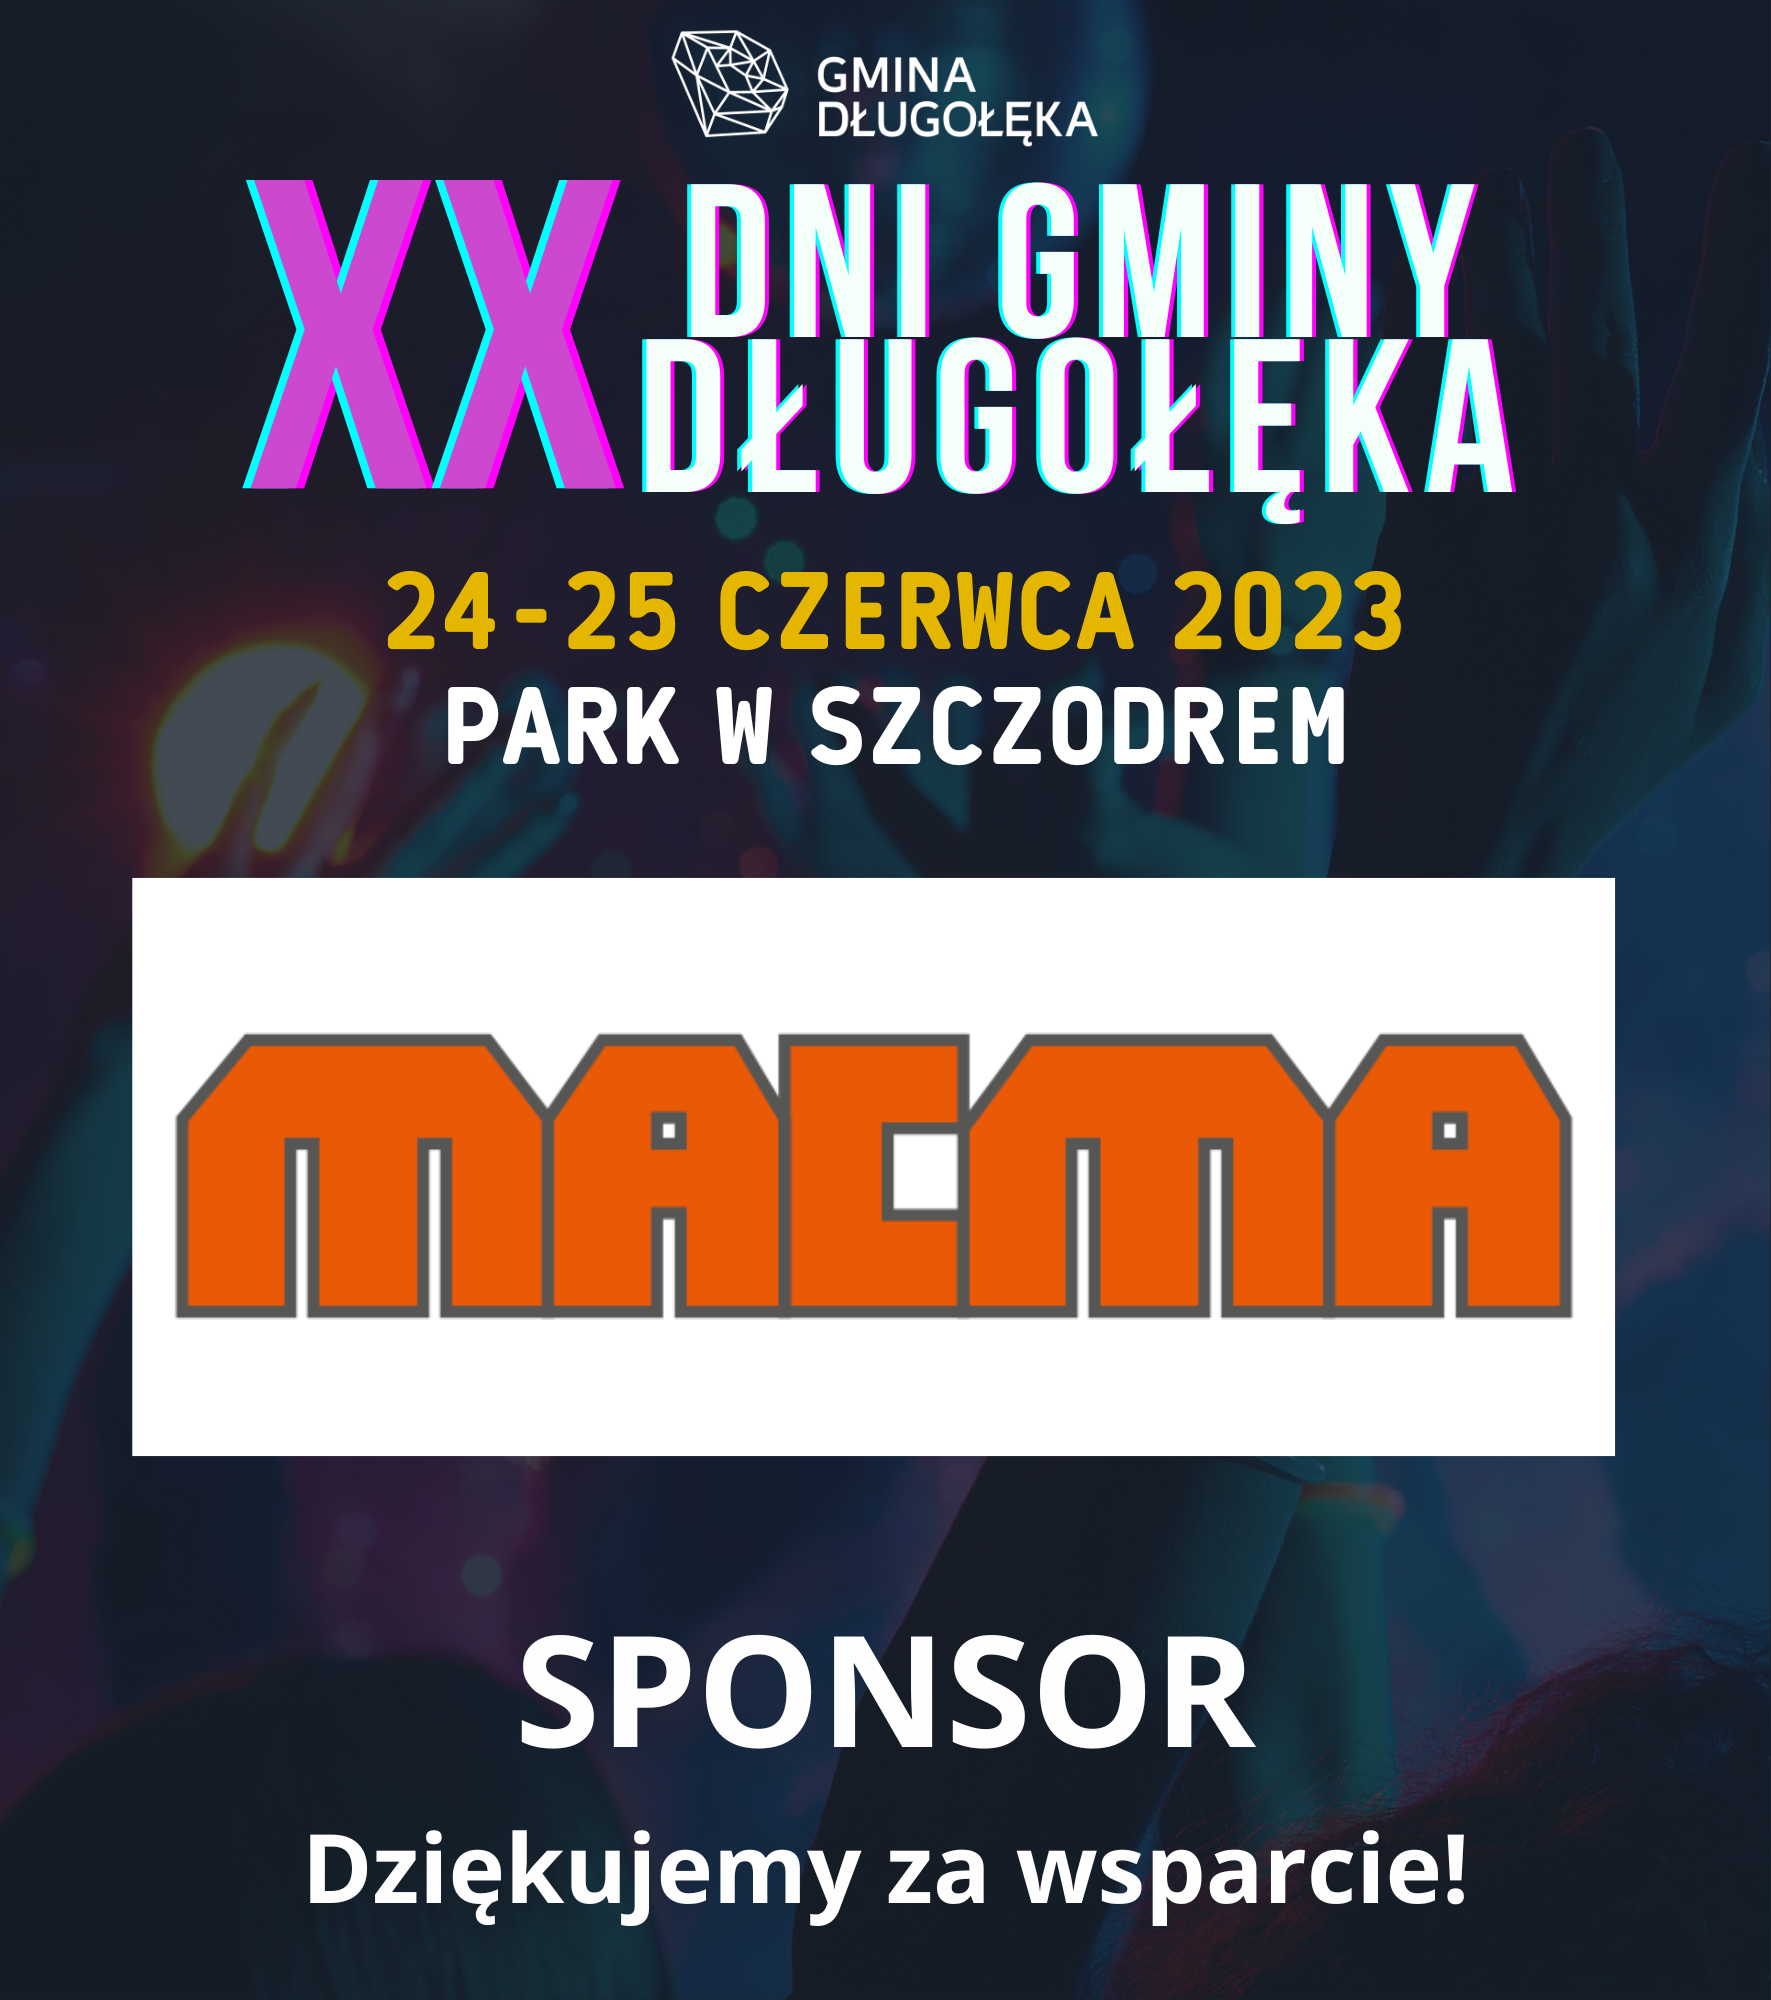 Macma sponsorem XX Dni Gminy Długołęka!